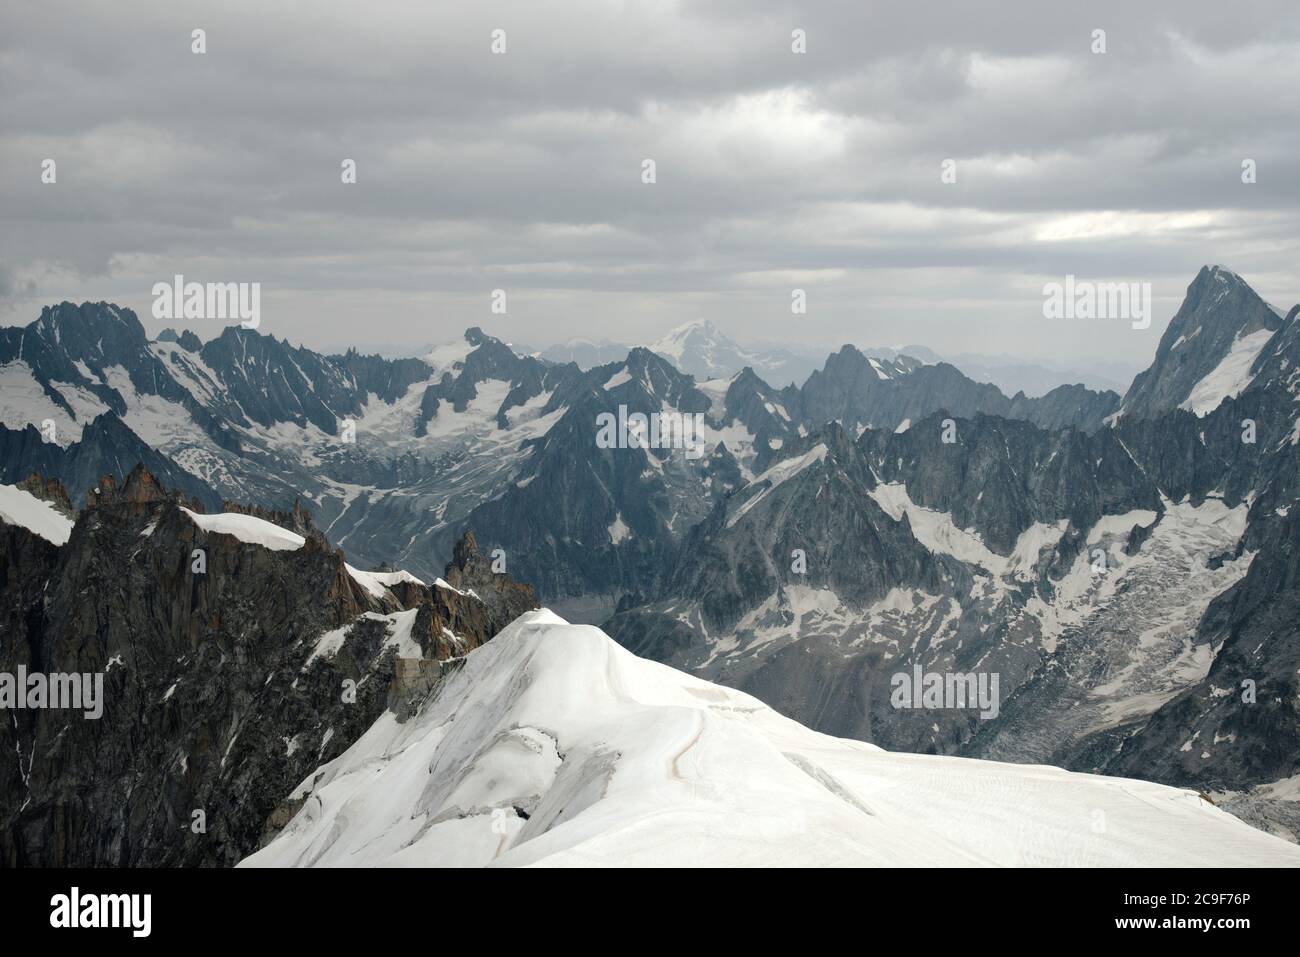 La neve copre le zone della roccia con nuvole grigio chiaro nel cielo. Foto Stock